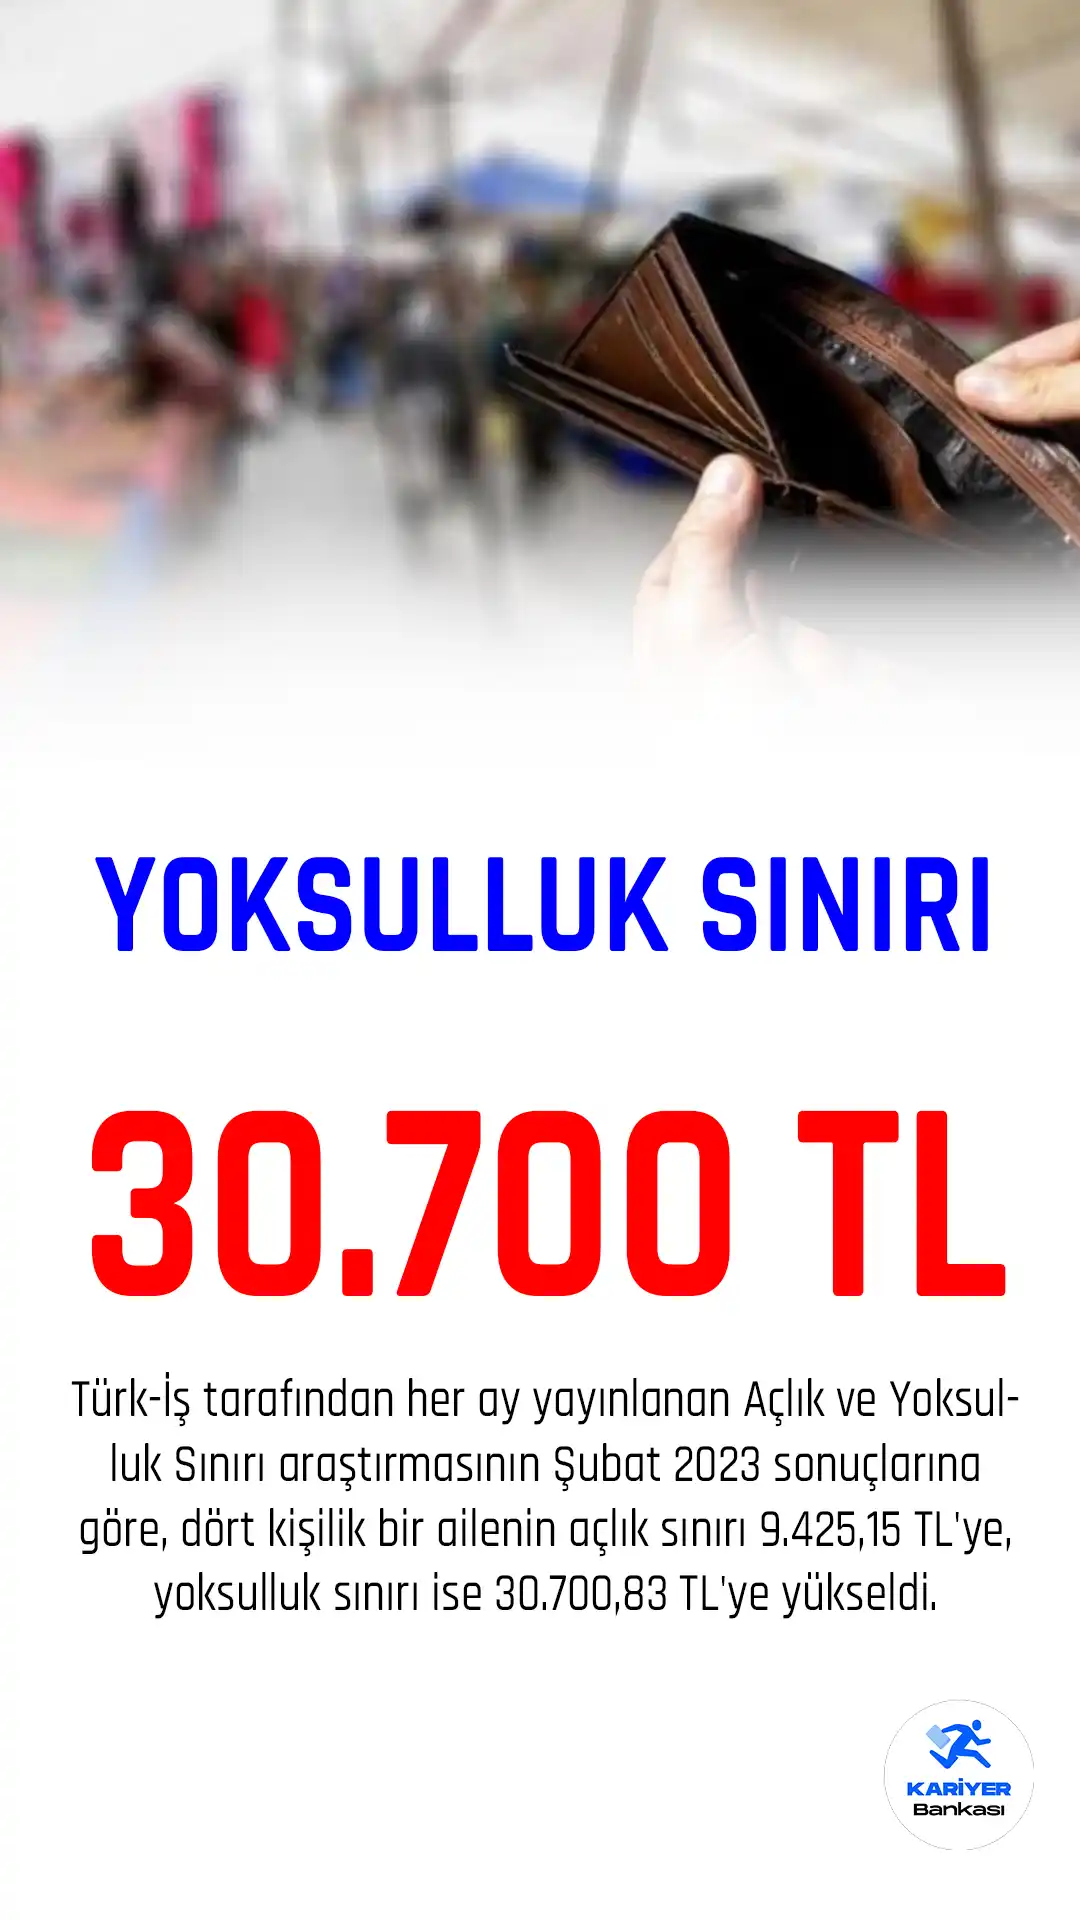 Türk iş yoksulluk sınırını 30 bin 700 TL olarak açıkladı.